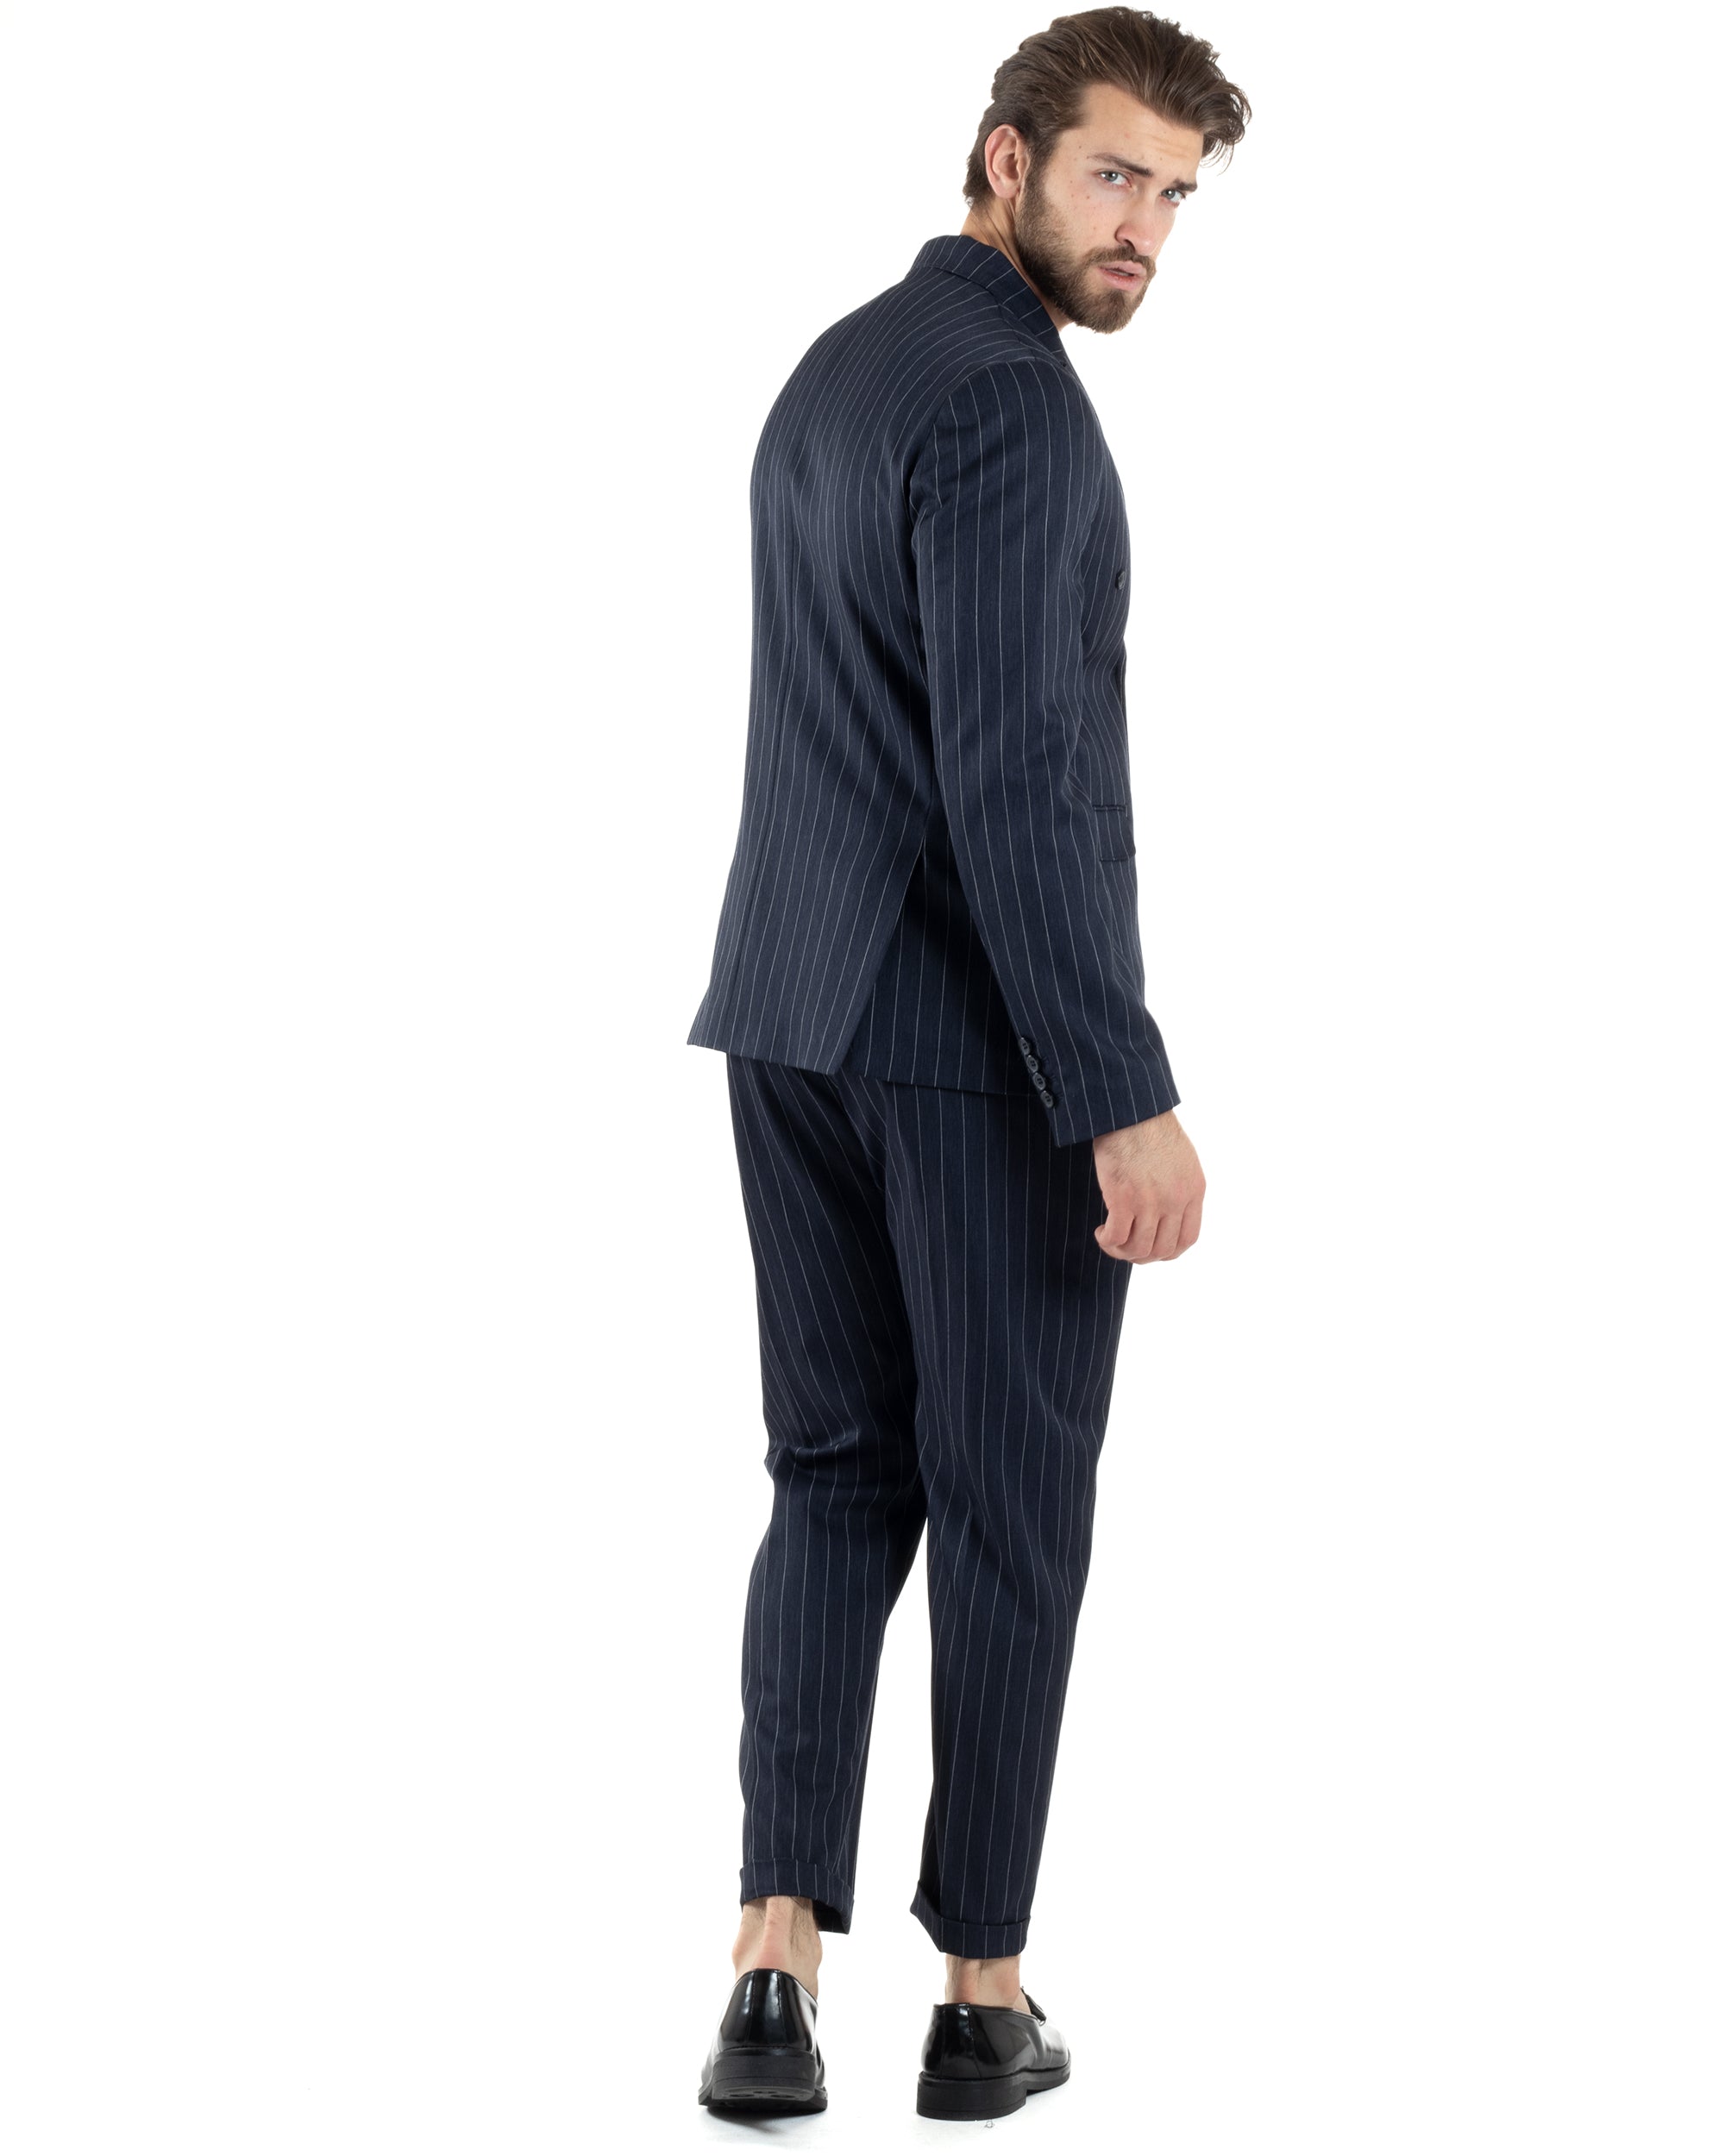 Abito Uomo Doppiopetto Vestito Completo Giacca Pantaloni Blu Gessato Elegante Casual GIOSAL-AE1053A